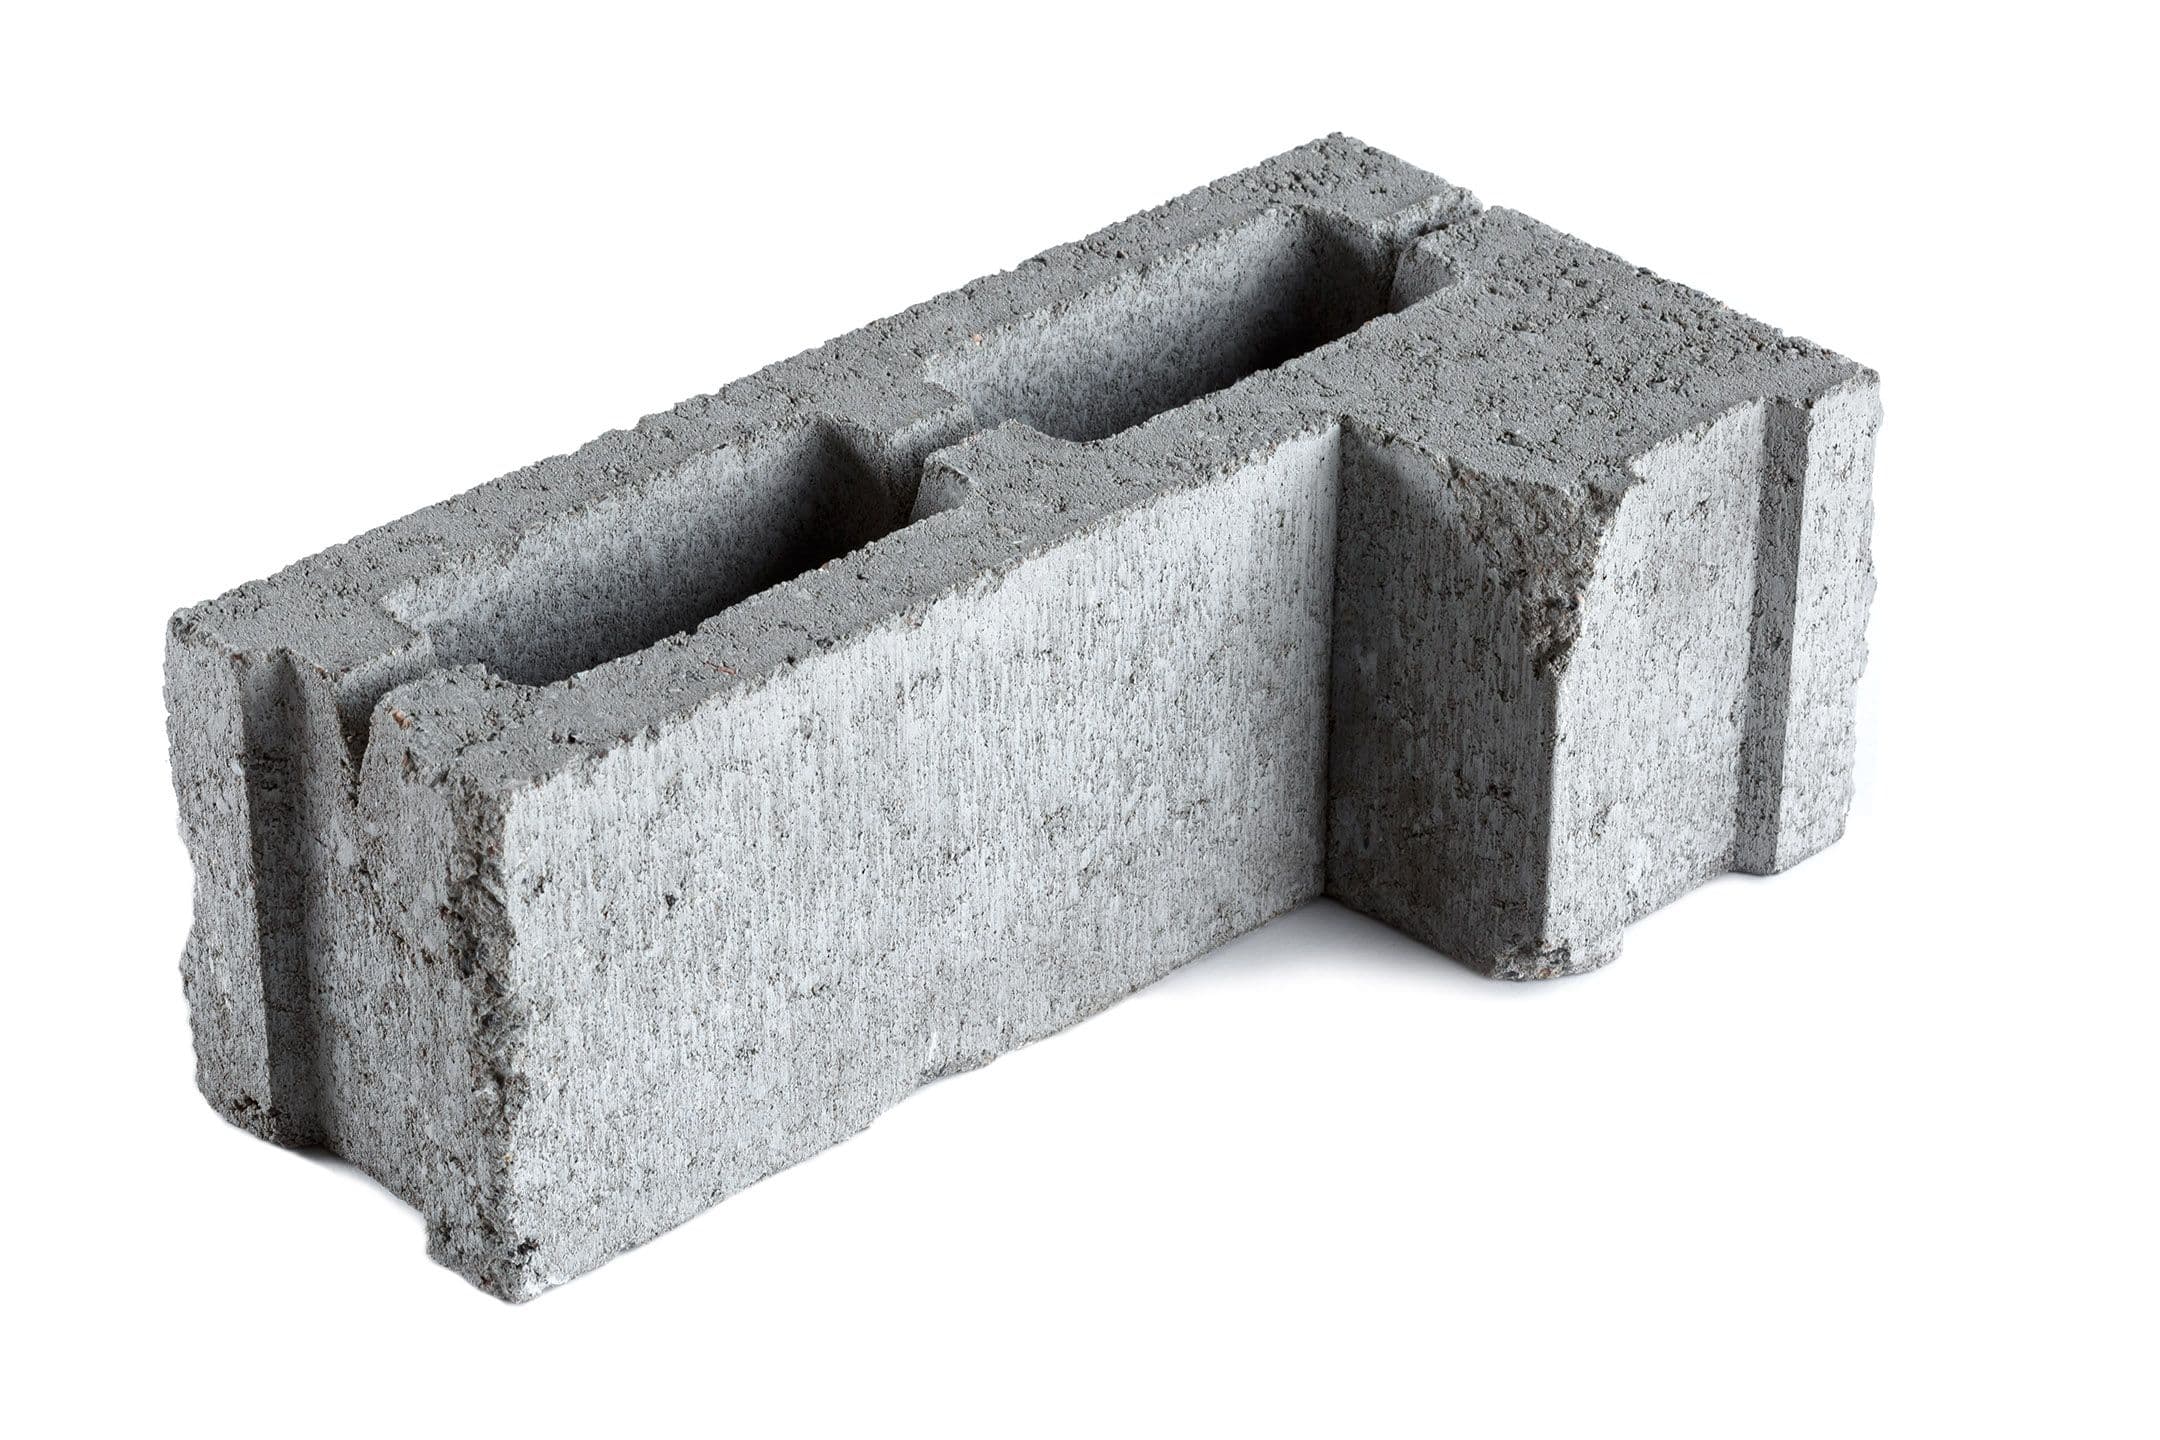 СКЦ-2Л-9У серый камень бетонный угловой, СКЦ-2Л-9У серый камень бетонный угловой